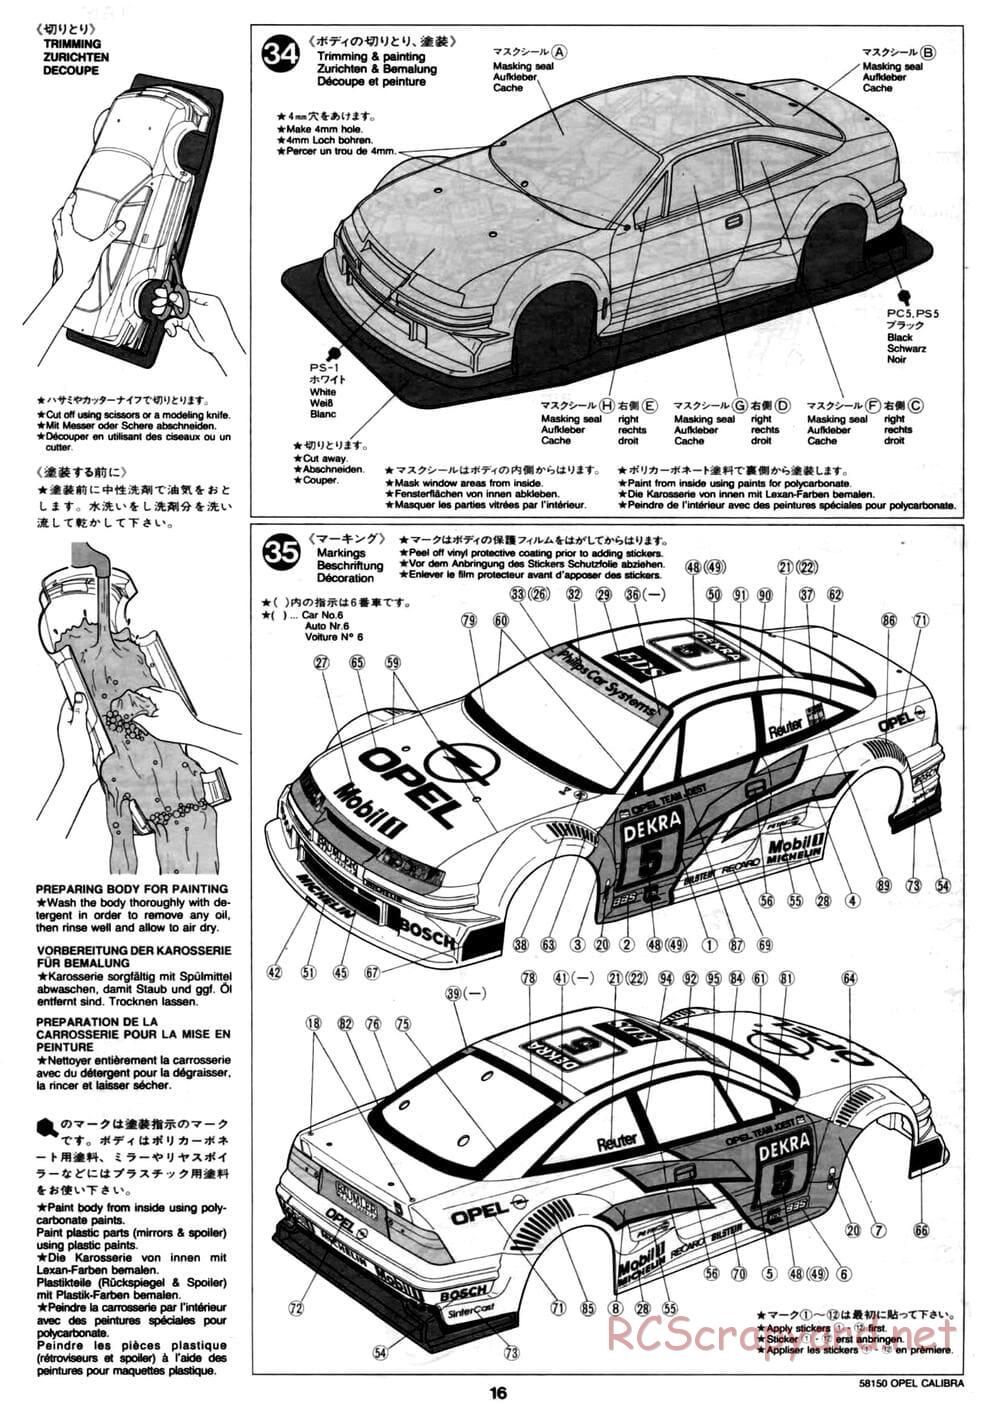 Tamiya - Opel Calibra V6 DTM - TA-02 Chassis - Manual - Page 16